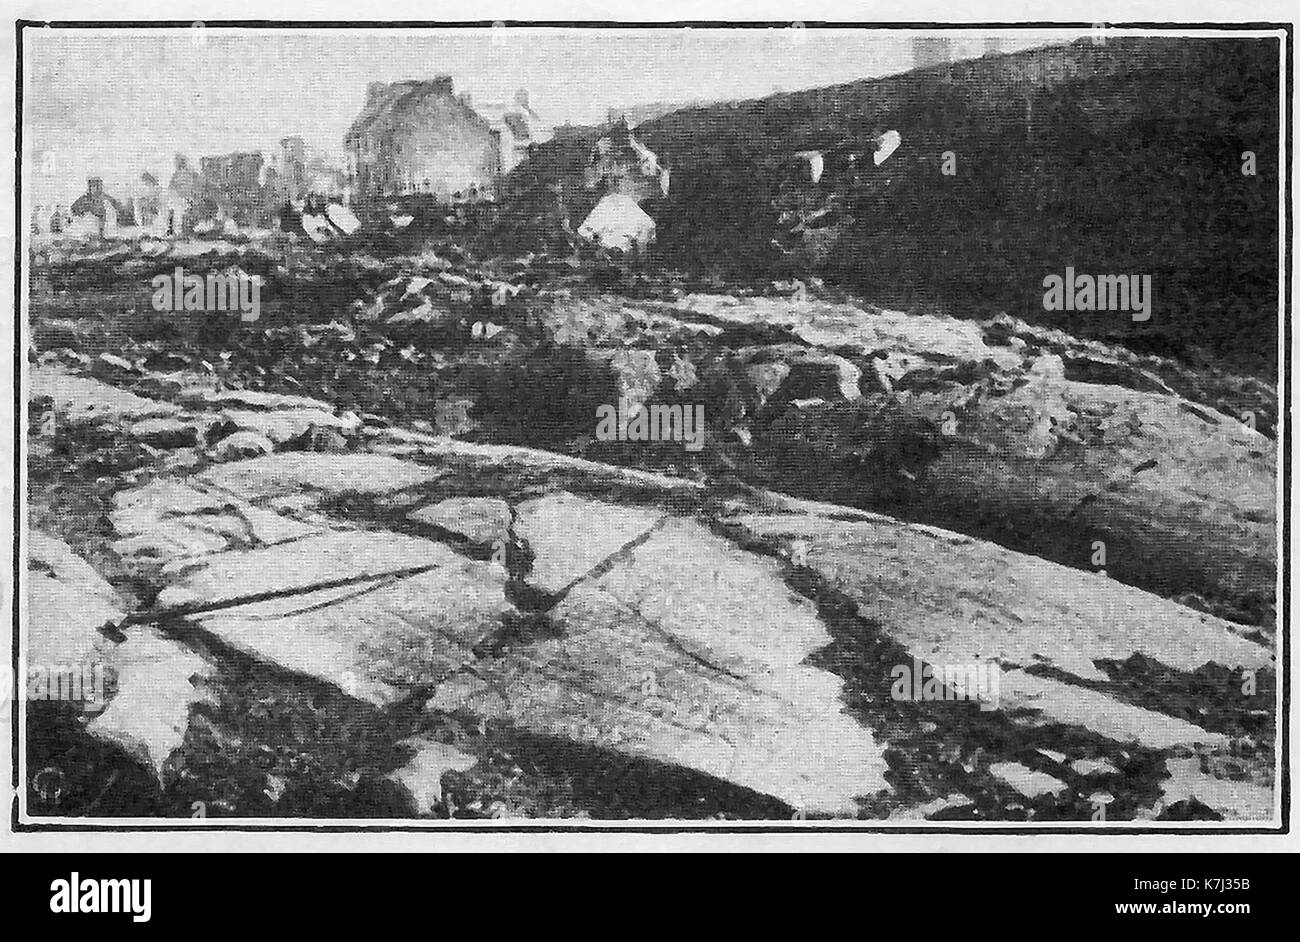 Un 1914 immagine dalla città di Stirling, Scozia mostrando rocce antiche decapati e spaccate da ghiacciai in tempi antichi Foto Stock